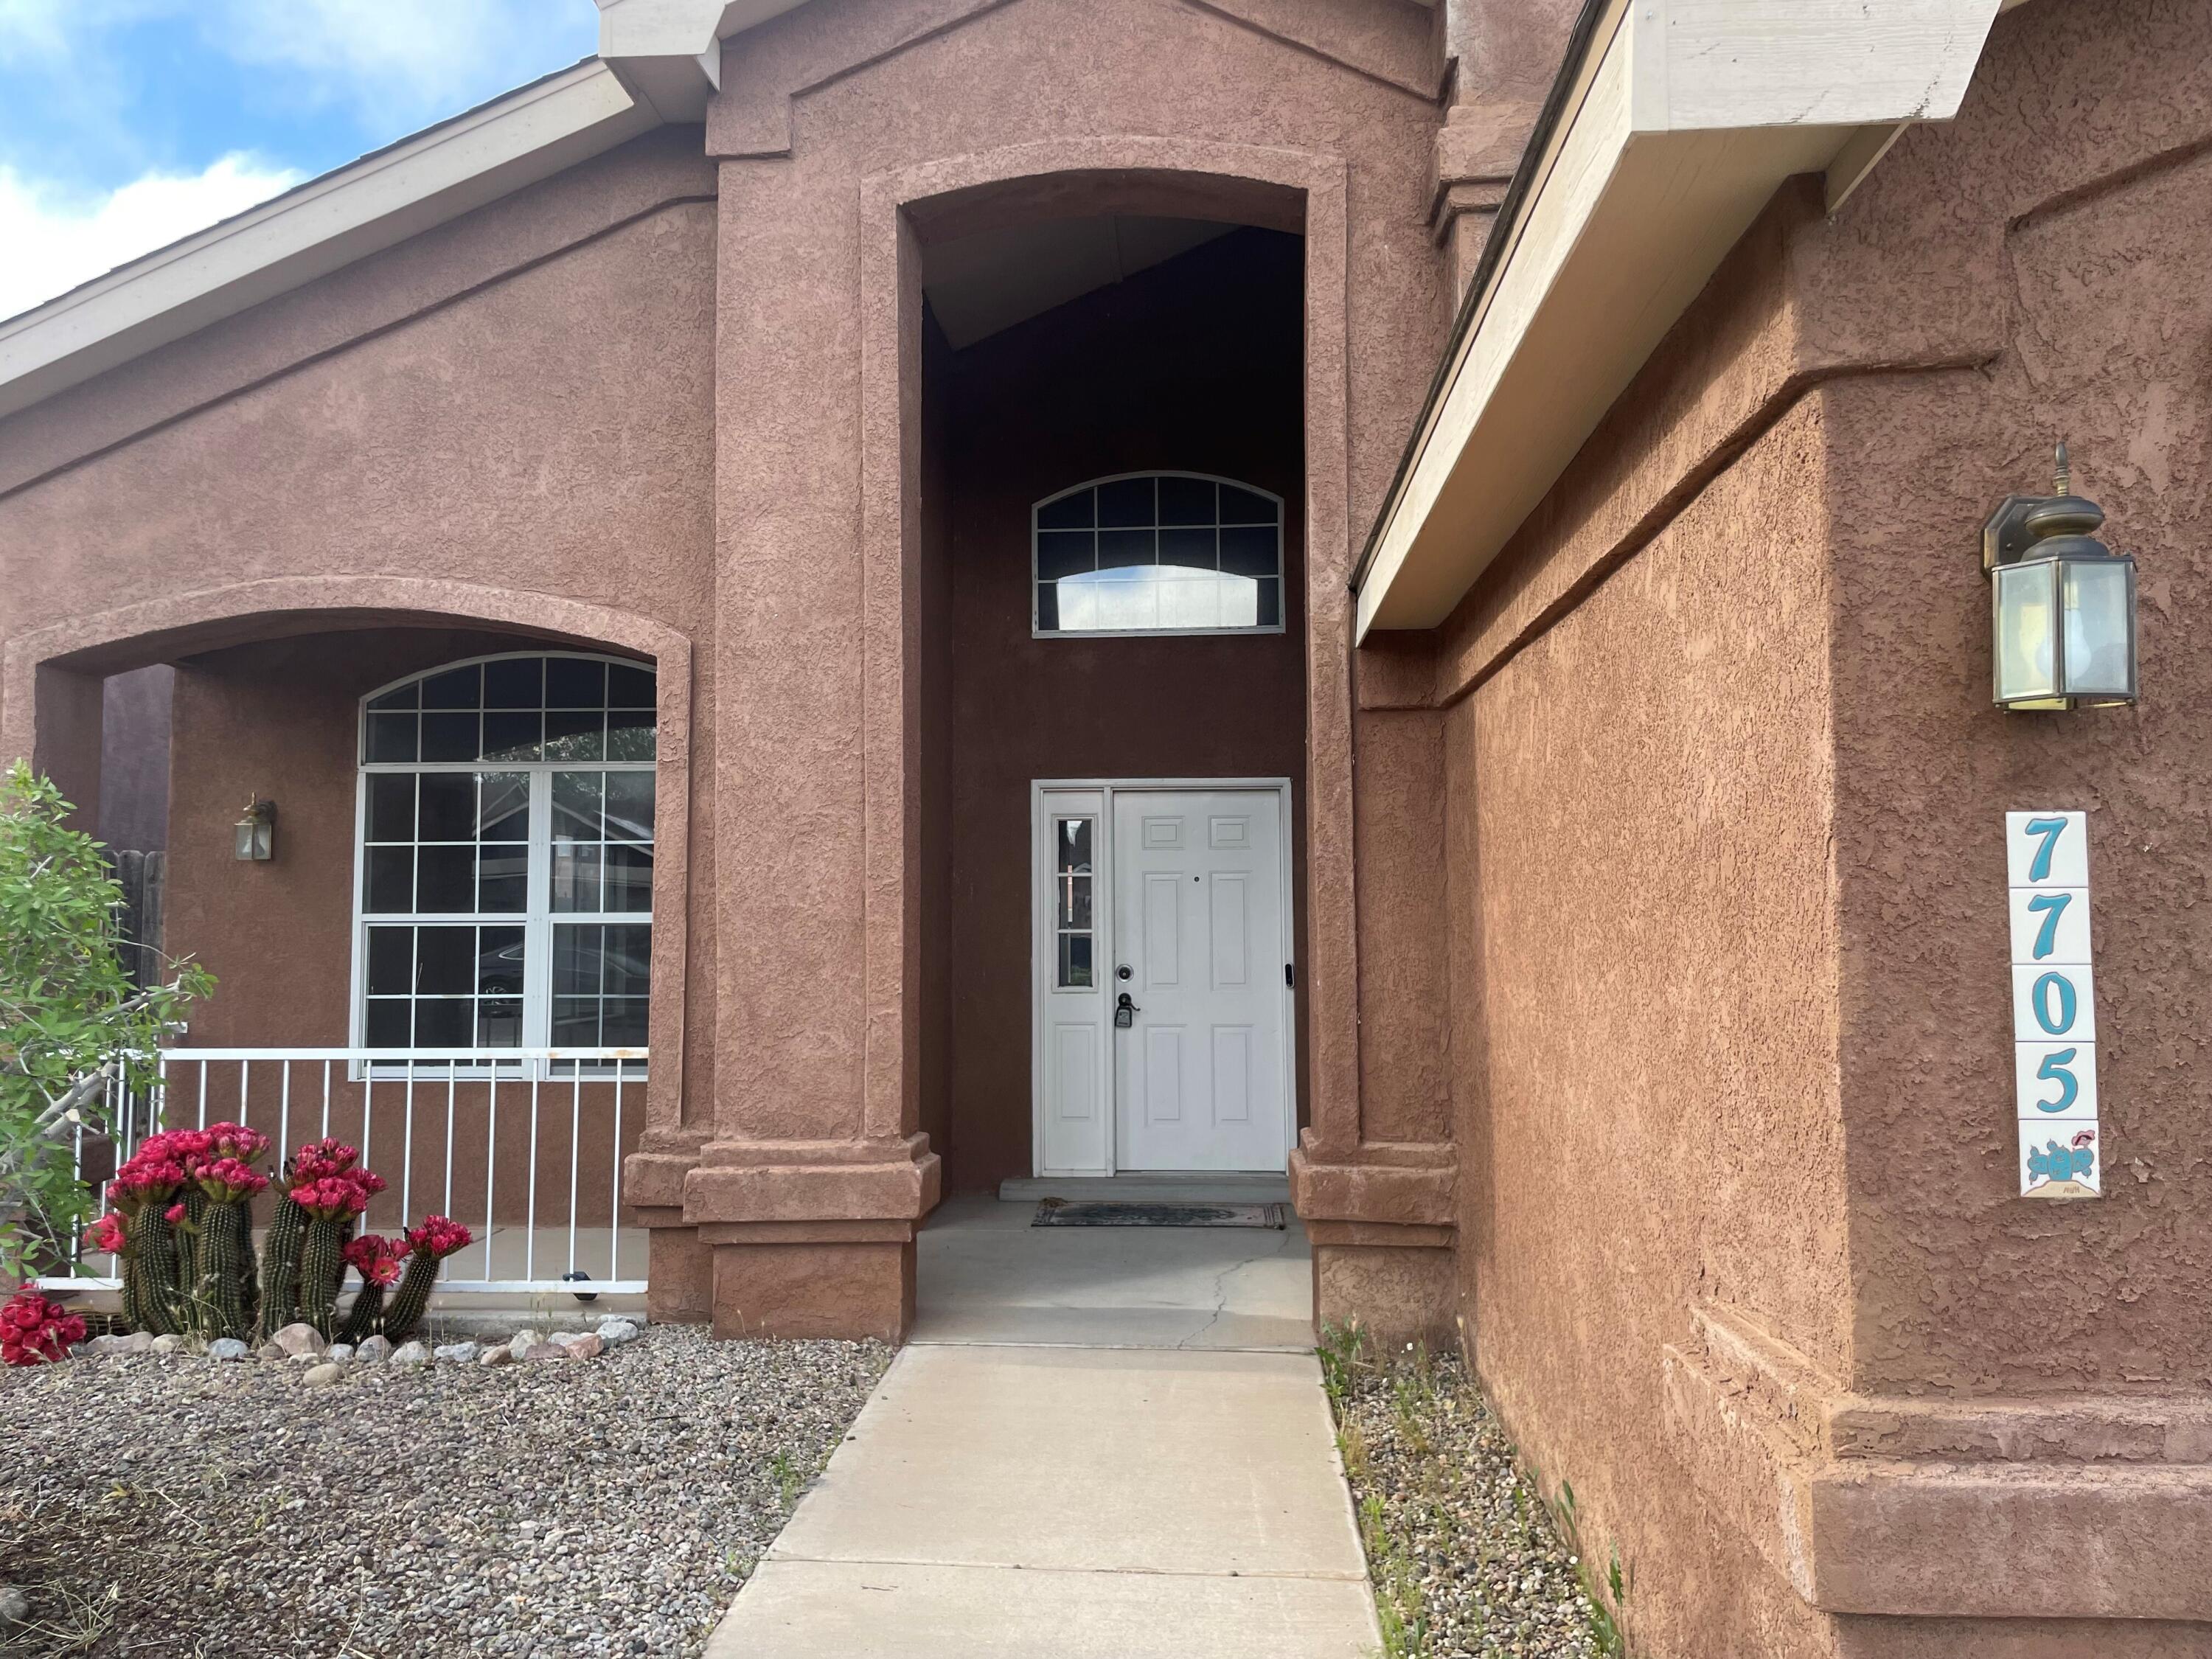 View Albuquerque, NM 87120 house